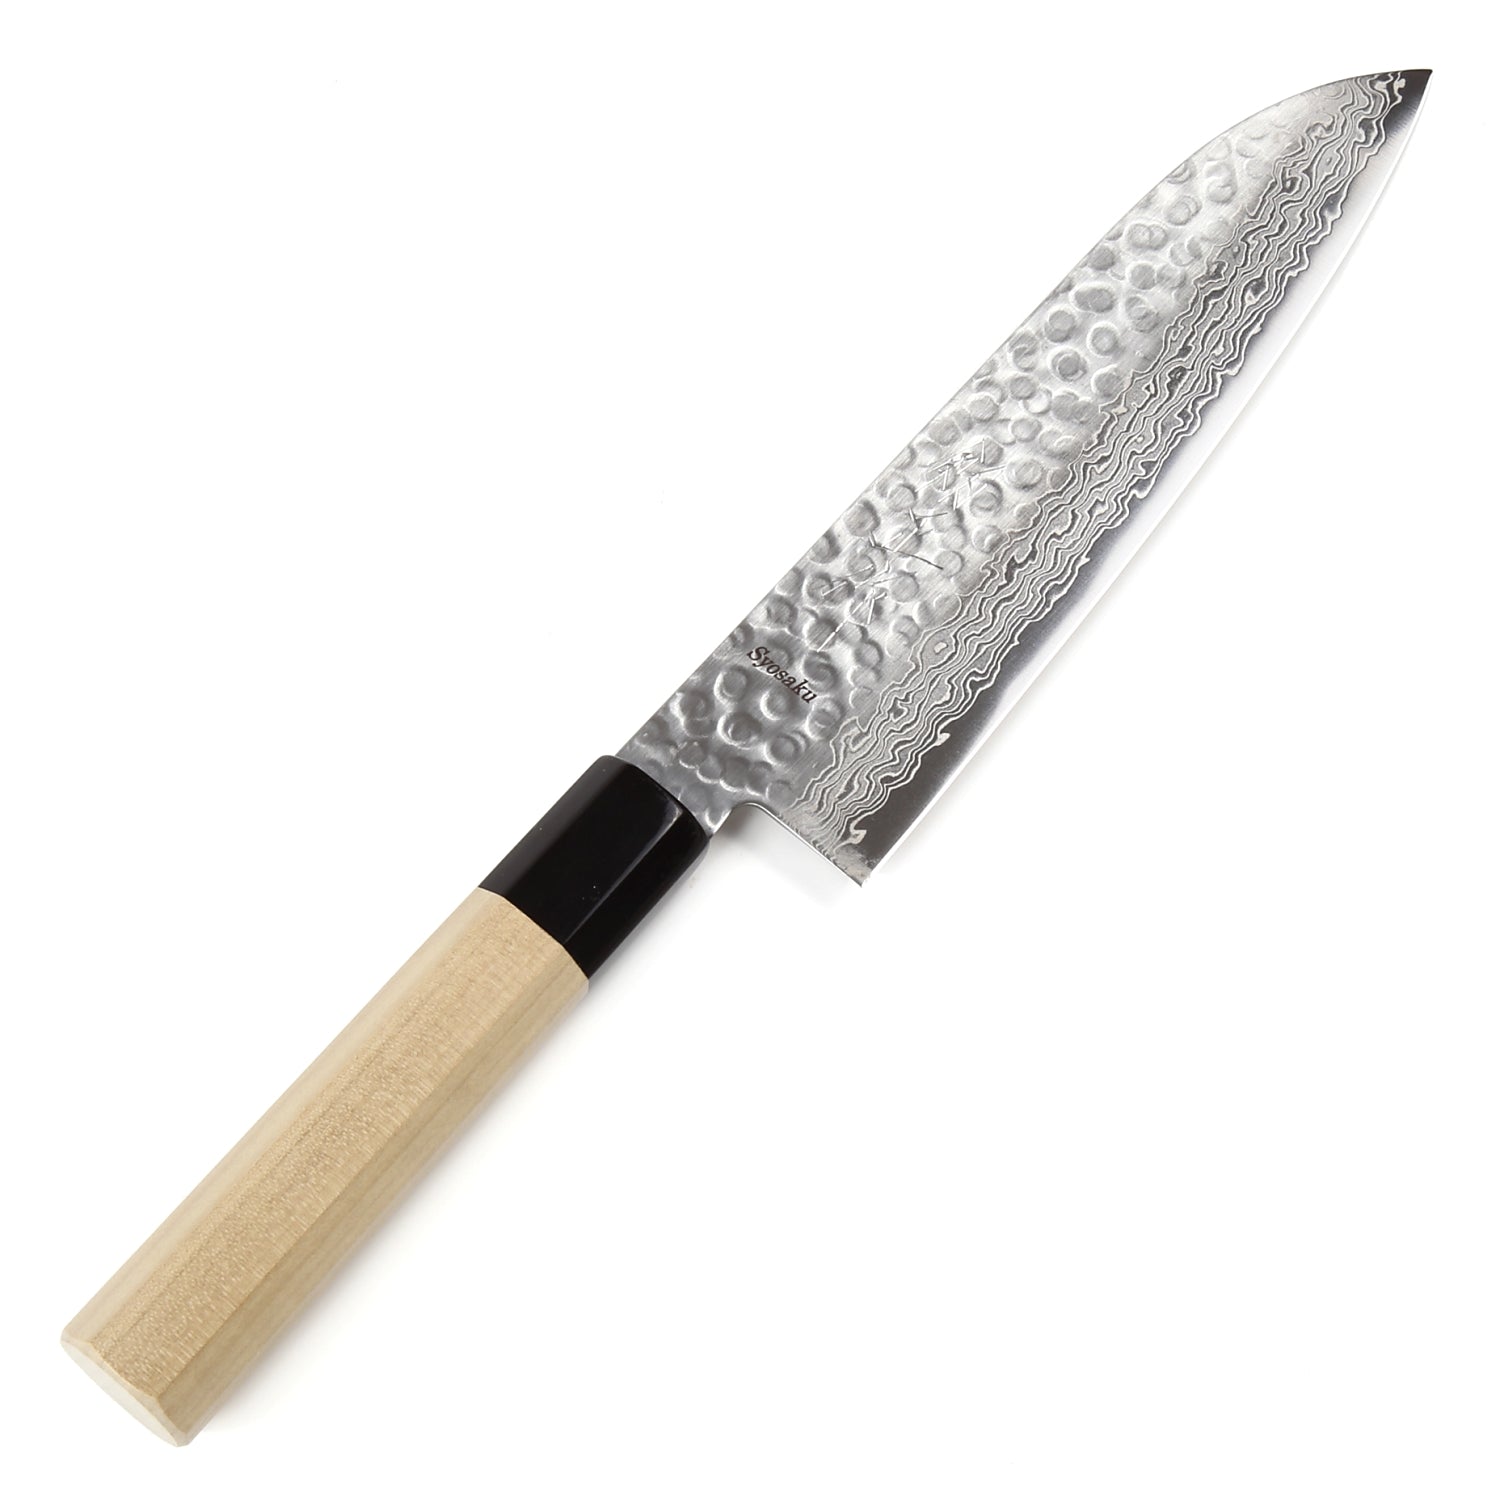 Sakai Damascus Santoku cooking knife(165 mm)